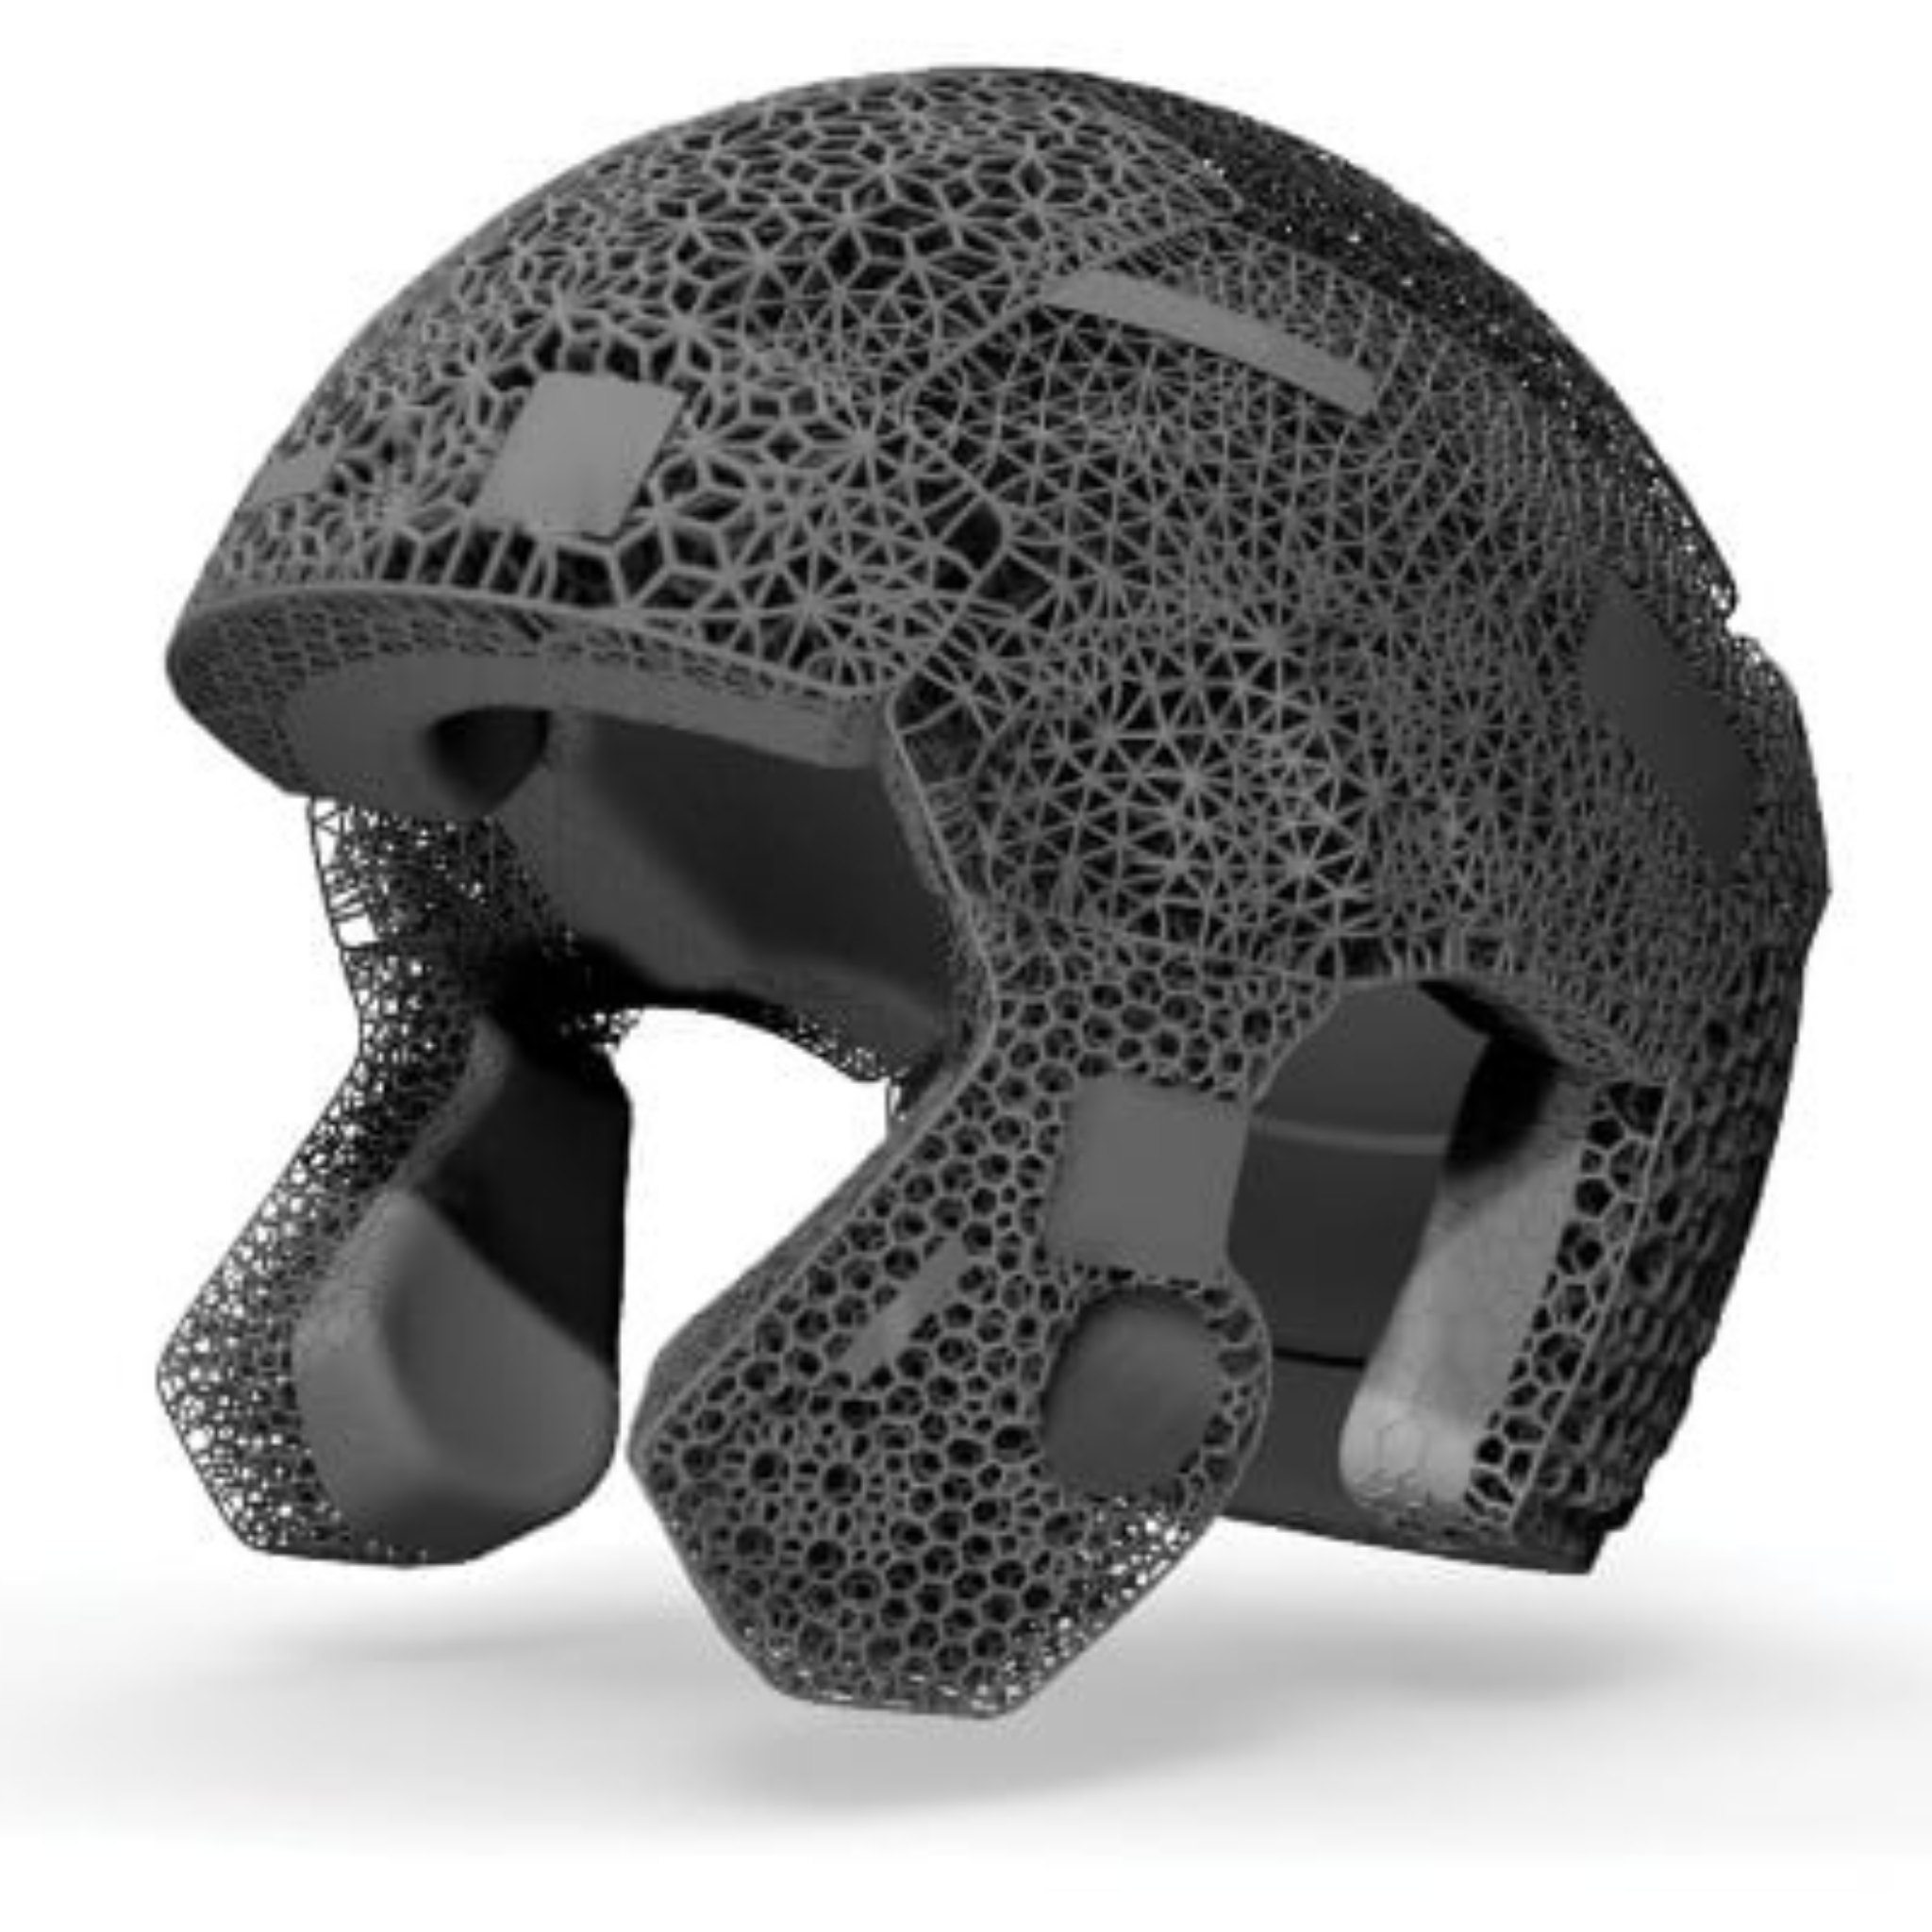 Abs-3d-printed-helmet